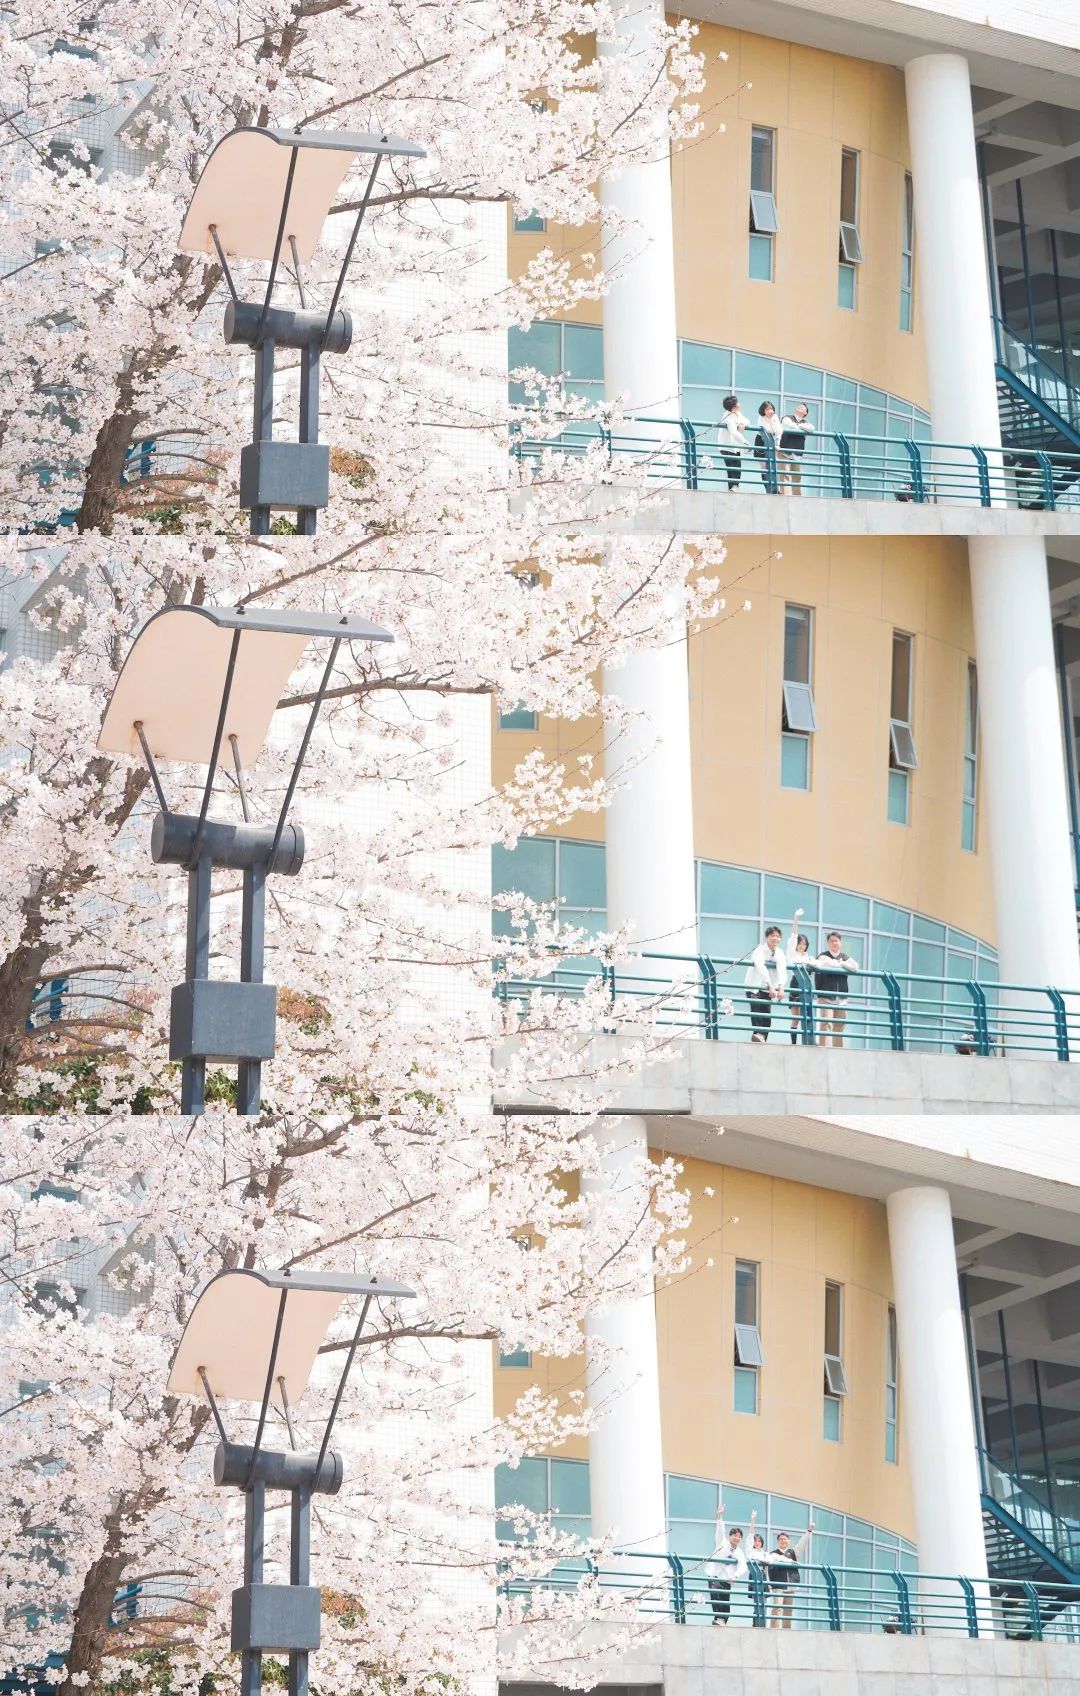 同济大学的樱花和顾村公园的早樱🌸每年春天都开得漂亮！